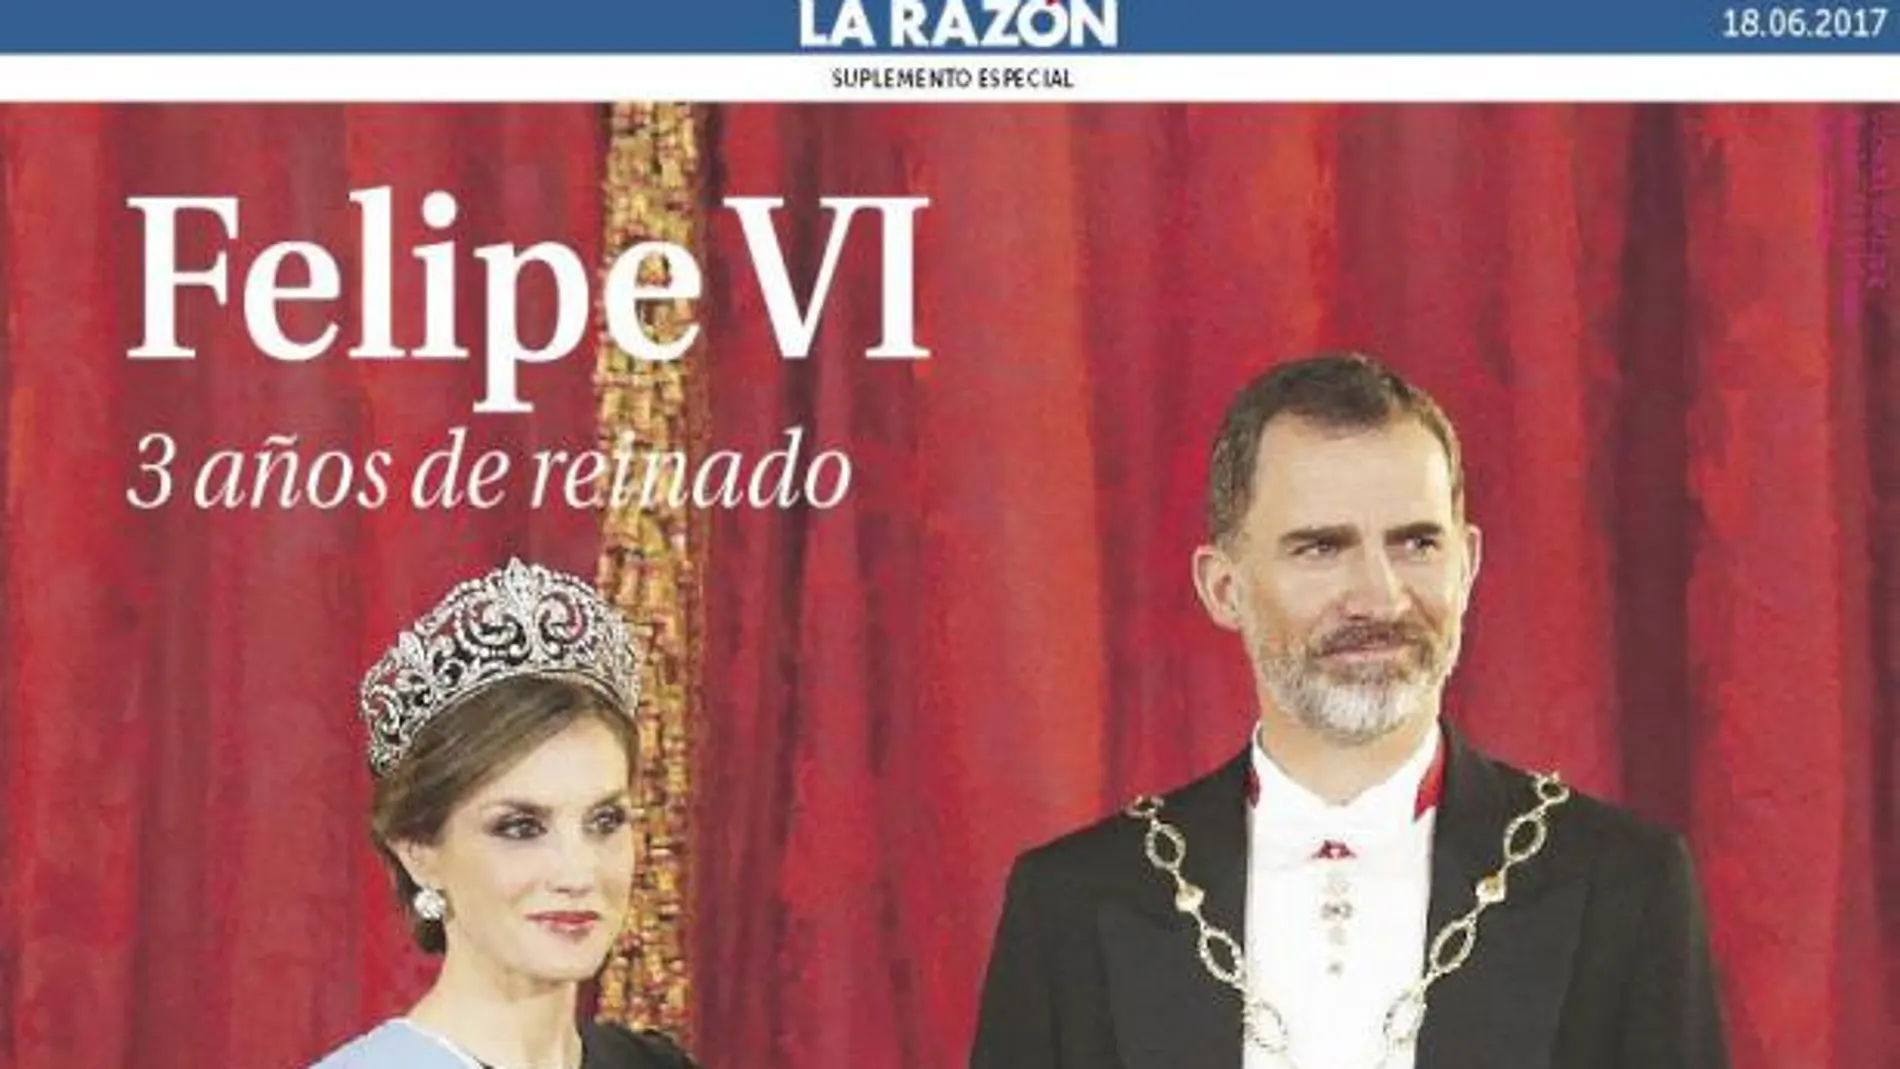 Hoy, con LA RAZÓN, especial Felipe VI, tres años de reinado